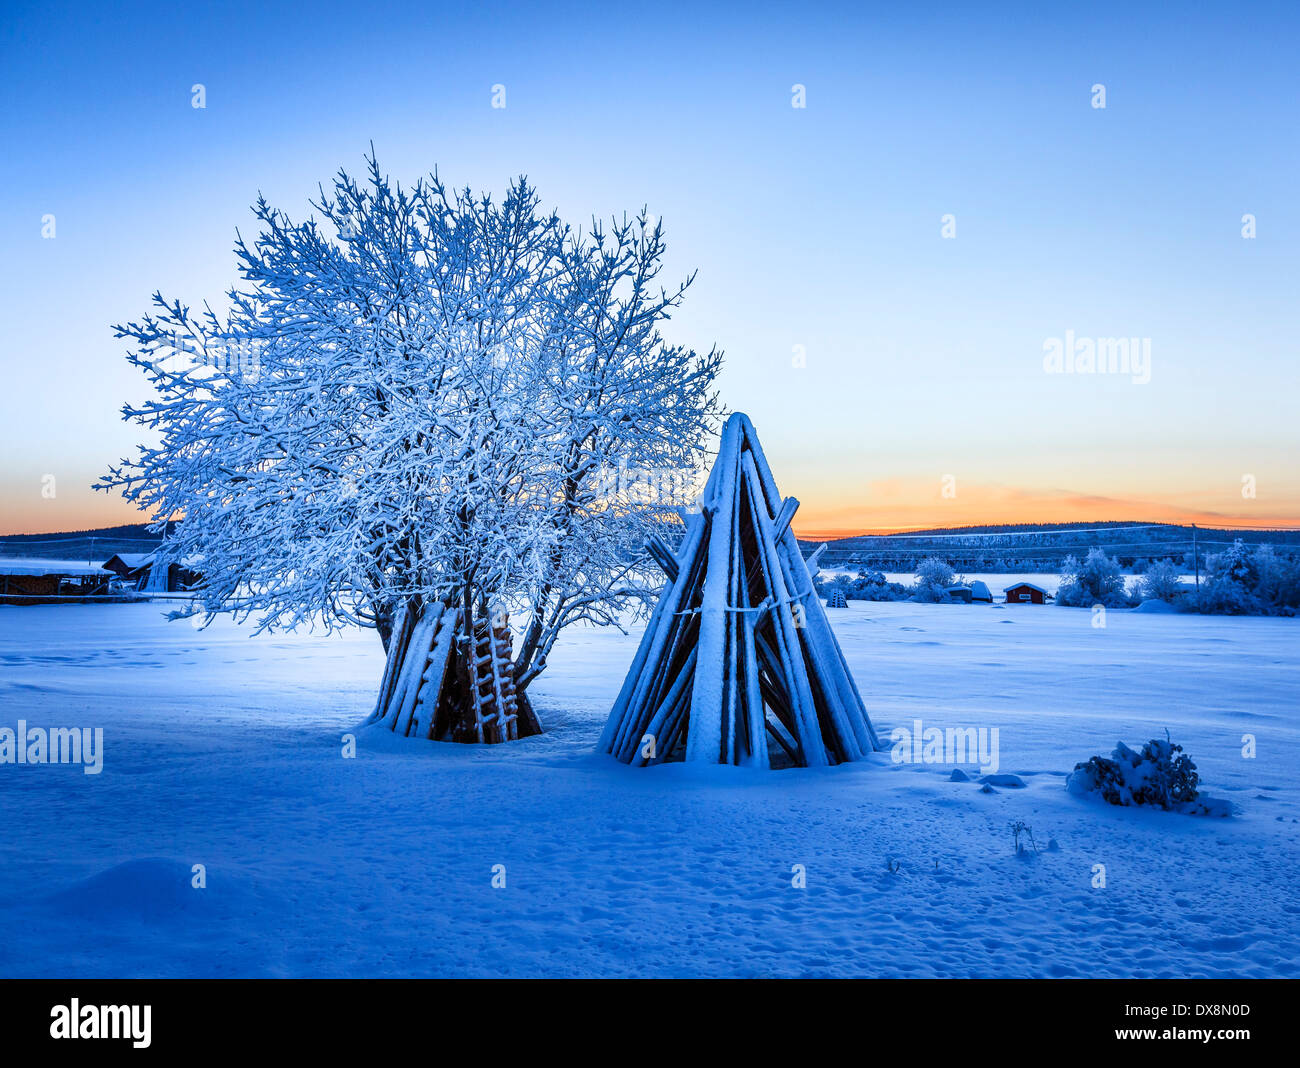 Bois empilés et un arbre couvert de neige à des températures extrêmement froides, Laponie, Suède Banque D'Images